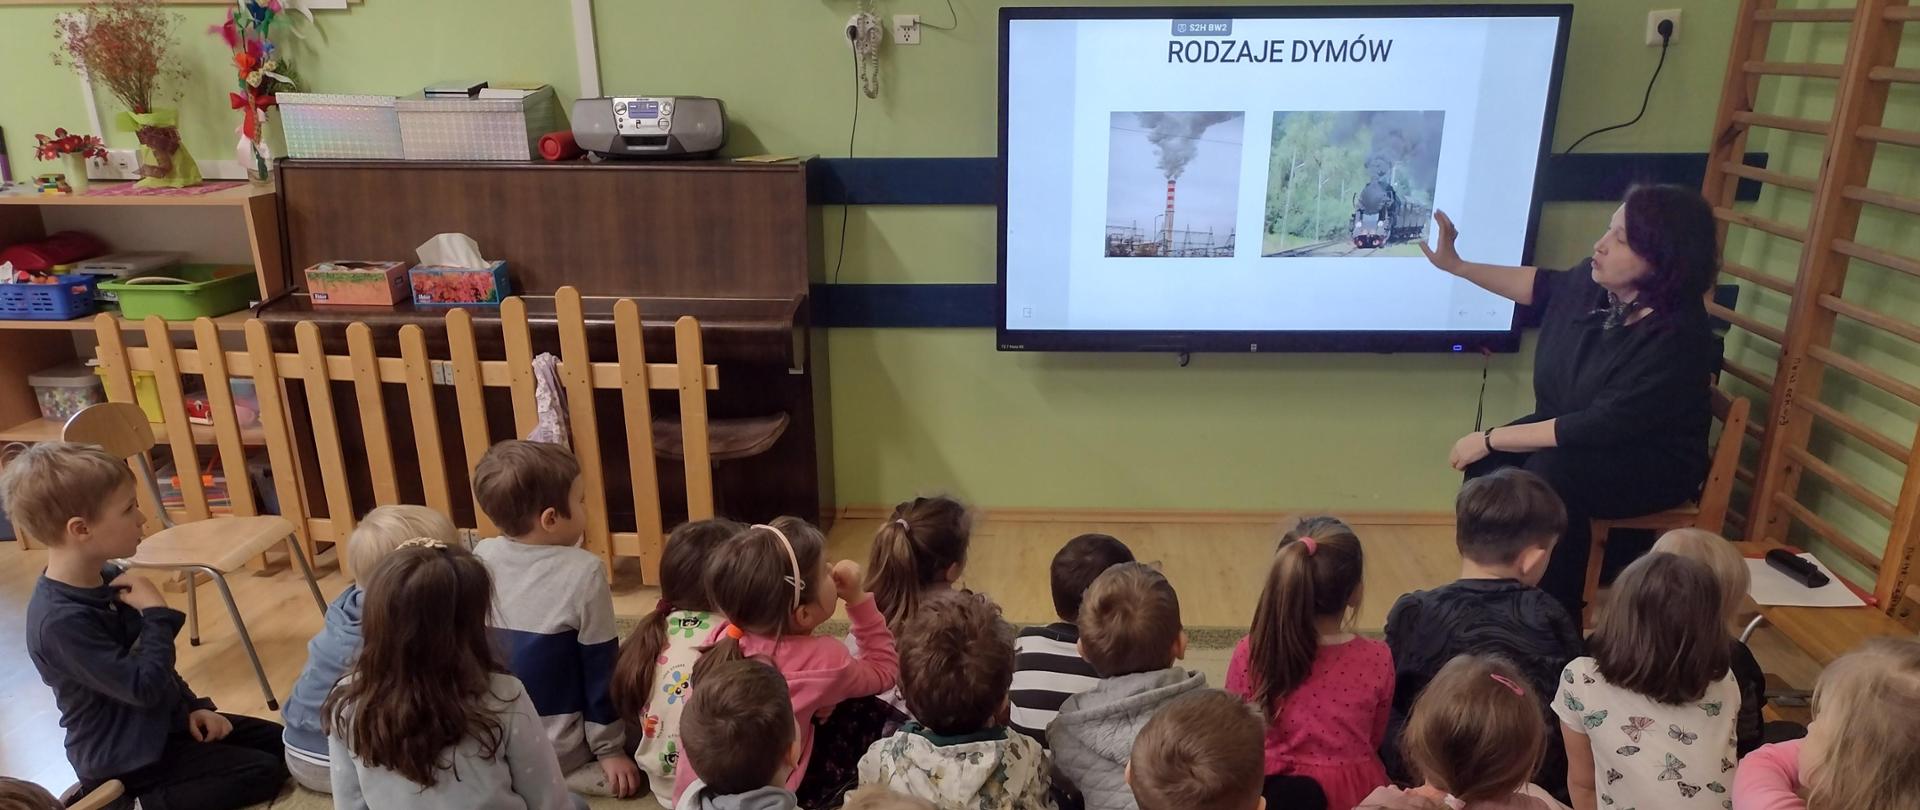 Dzieci siedzą na dywanie i oglądają prezentację z rodzajami dymów